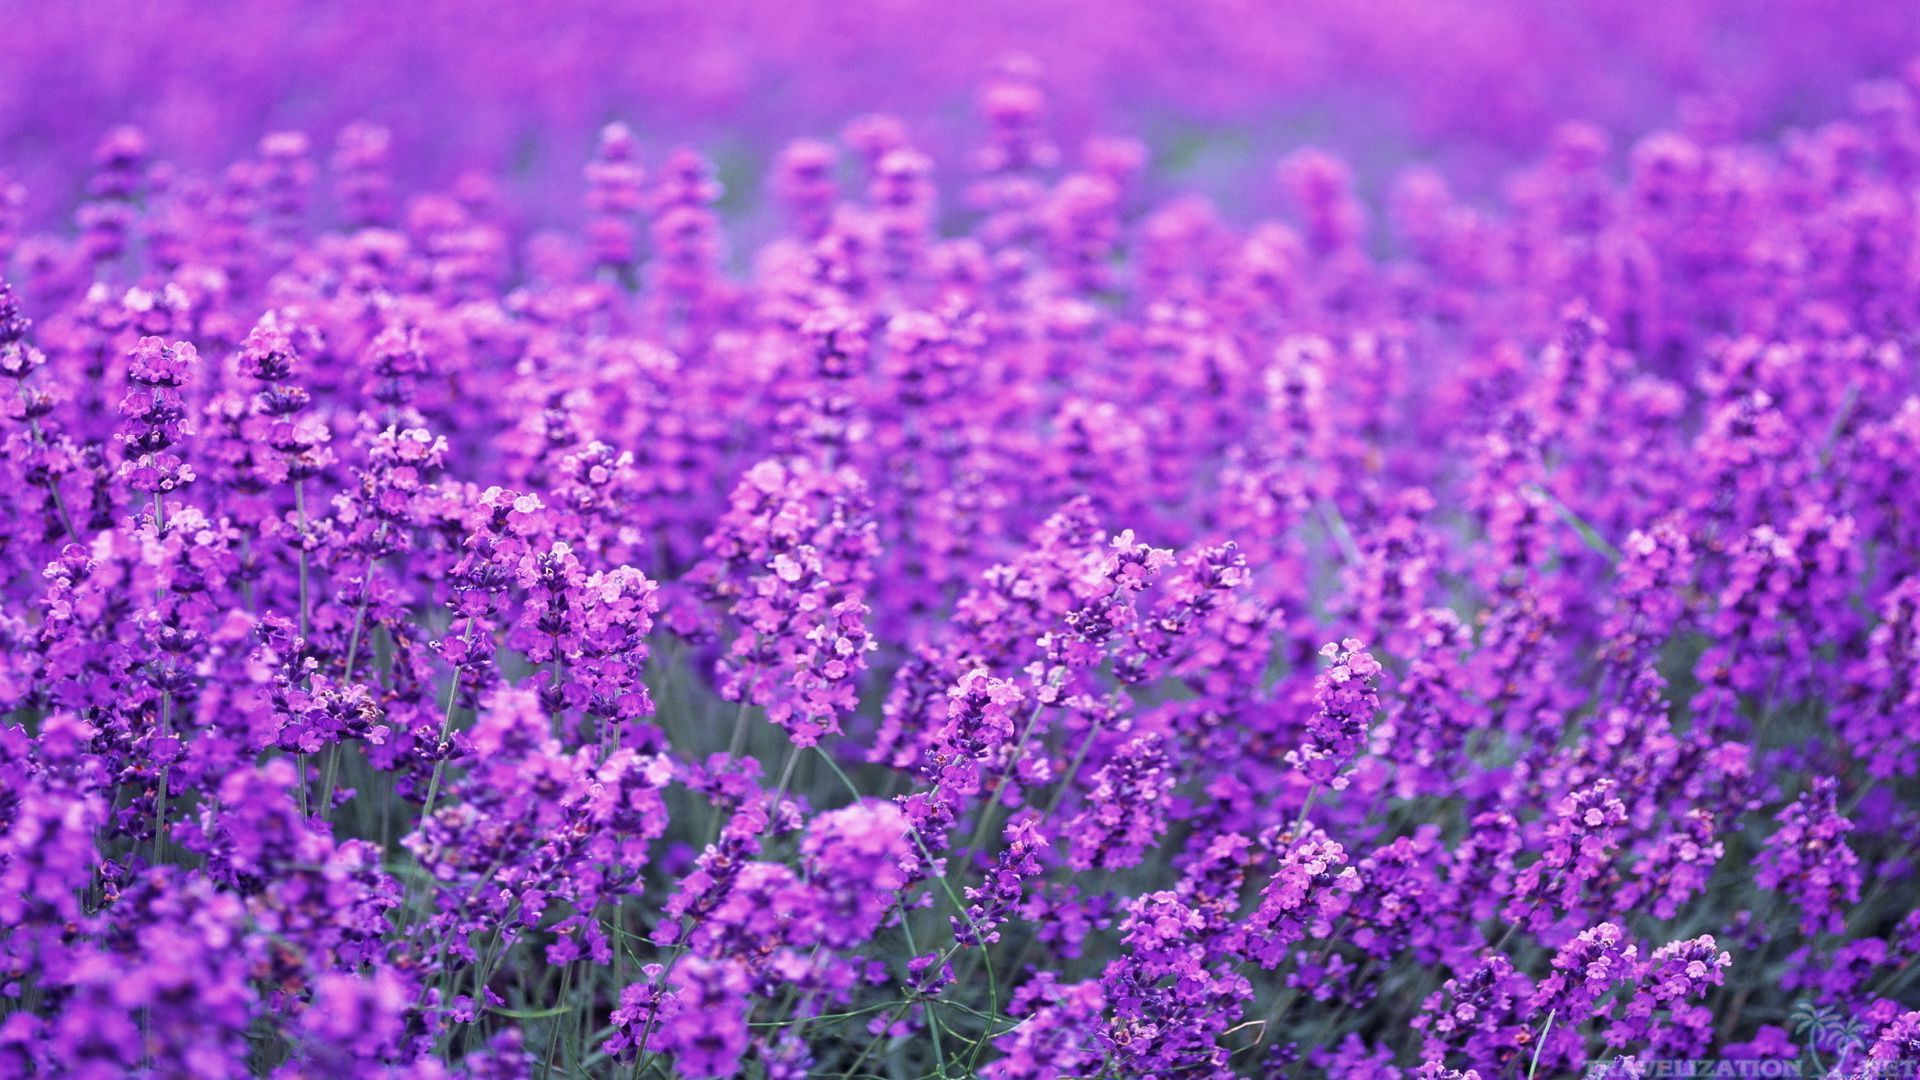 Lavender Desktop